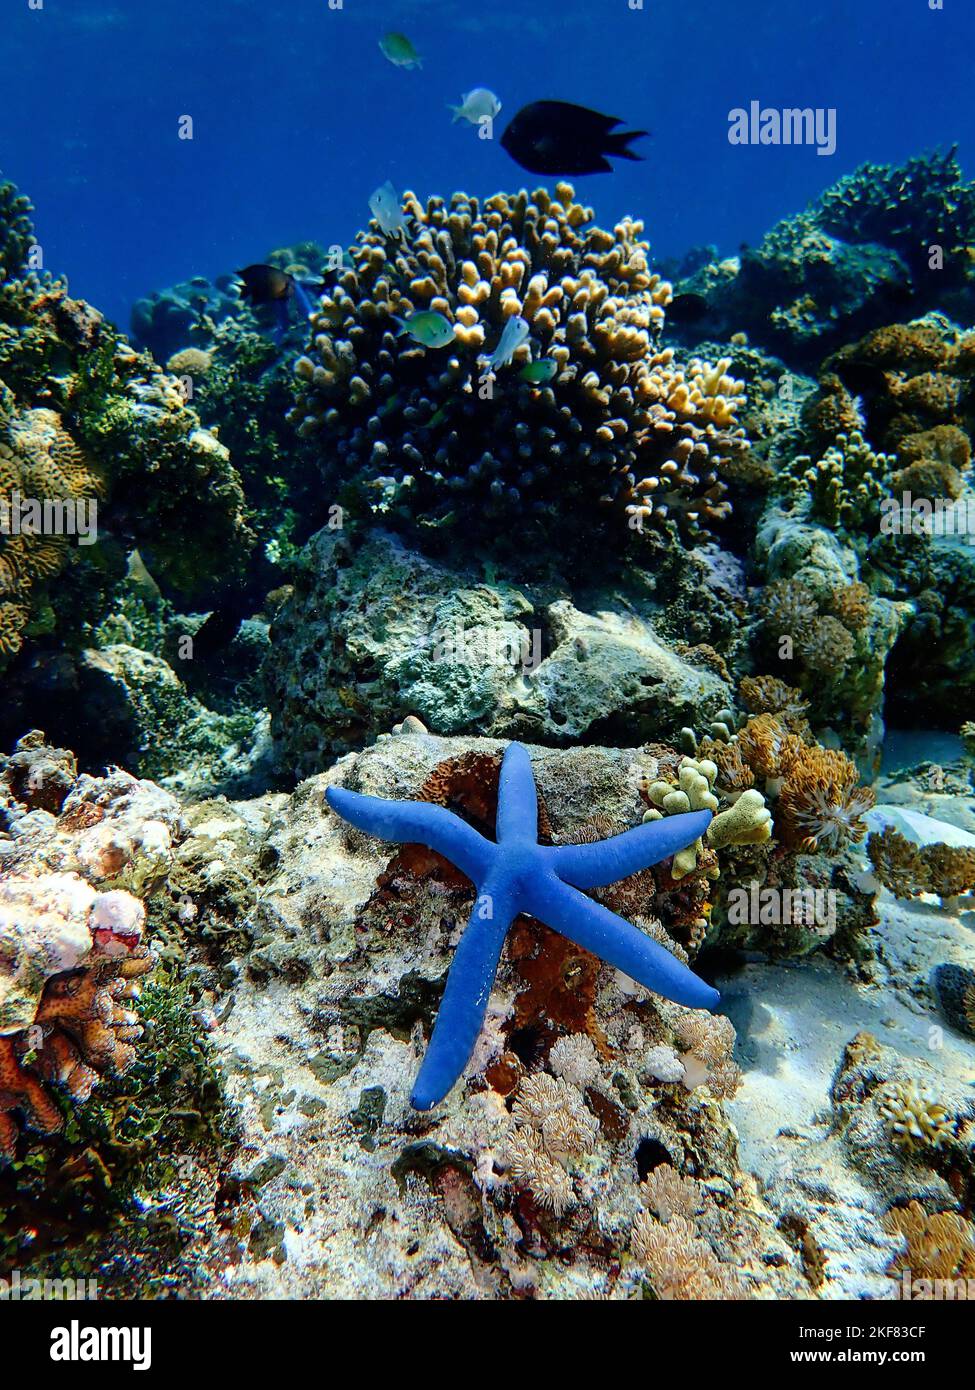 Indonesia Alor Island - Marine life Blue sea star - Linckia laevigata Stock Photo